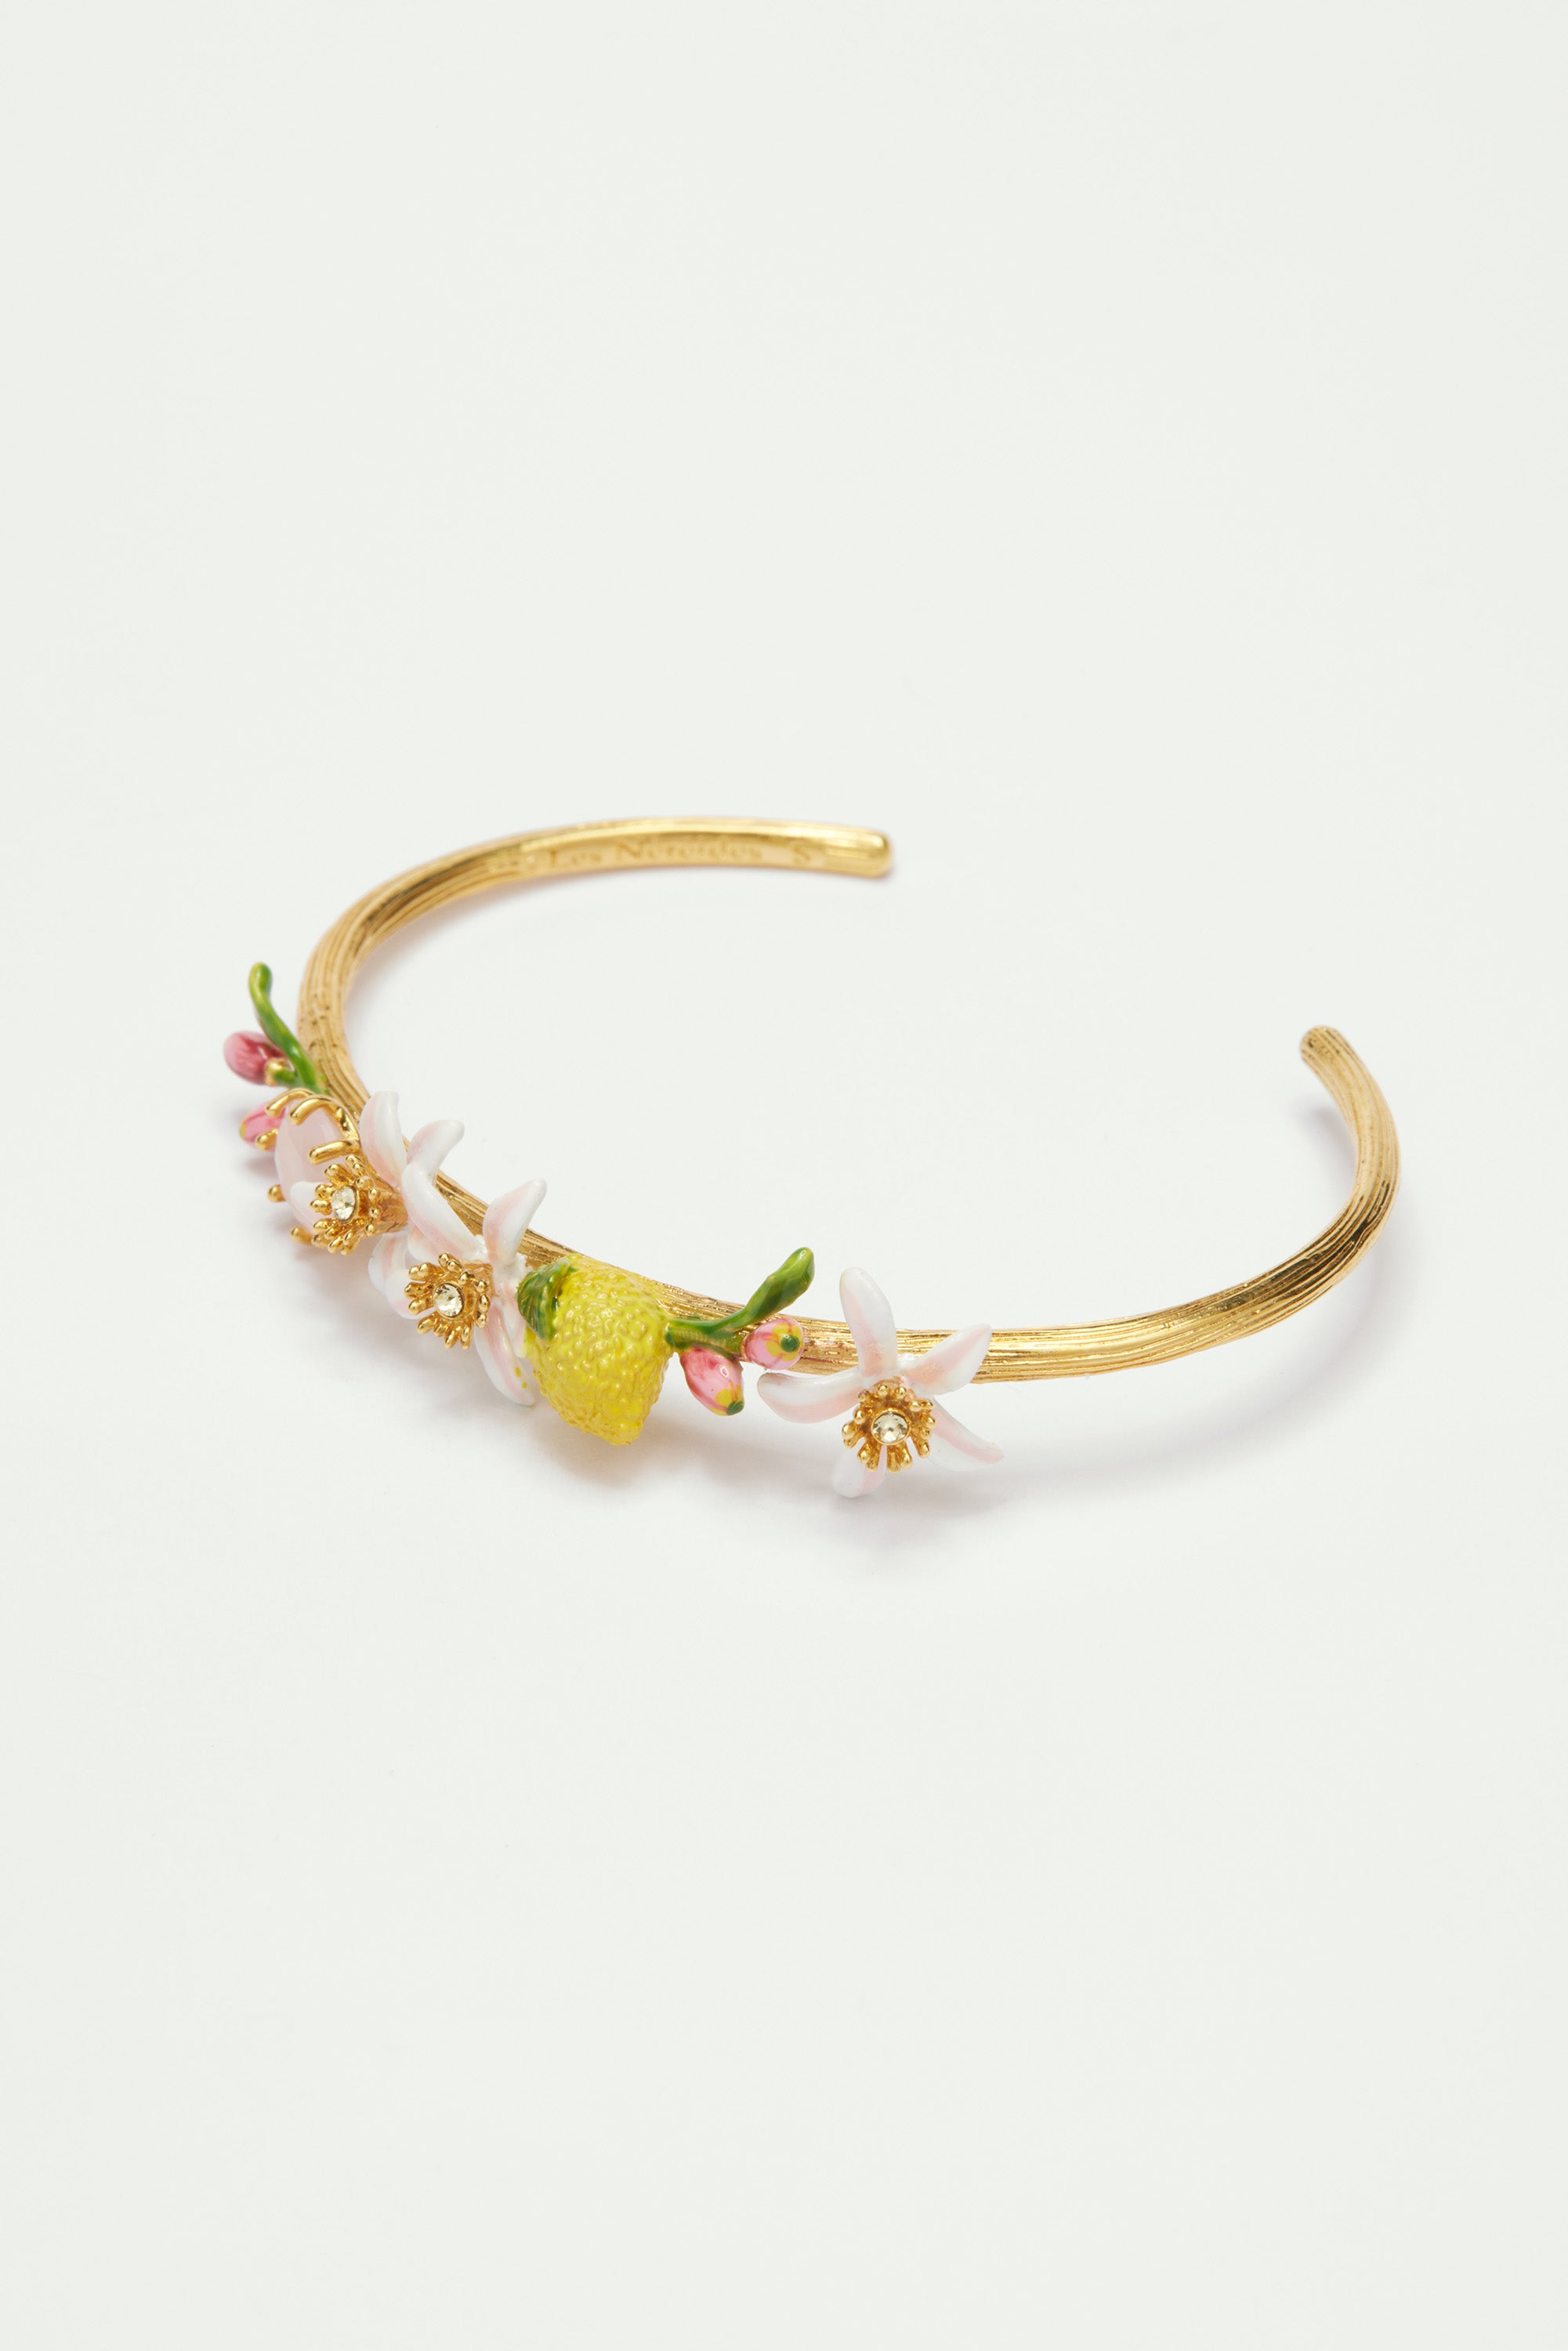 Bracelet jonc citron, fleurs de citronnier et pierre de verre rose